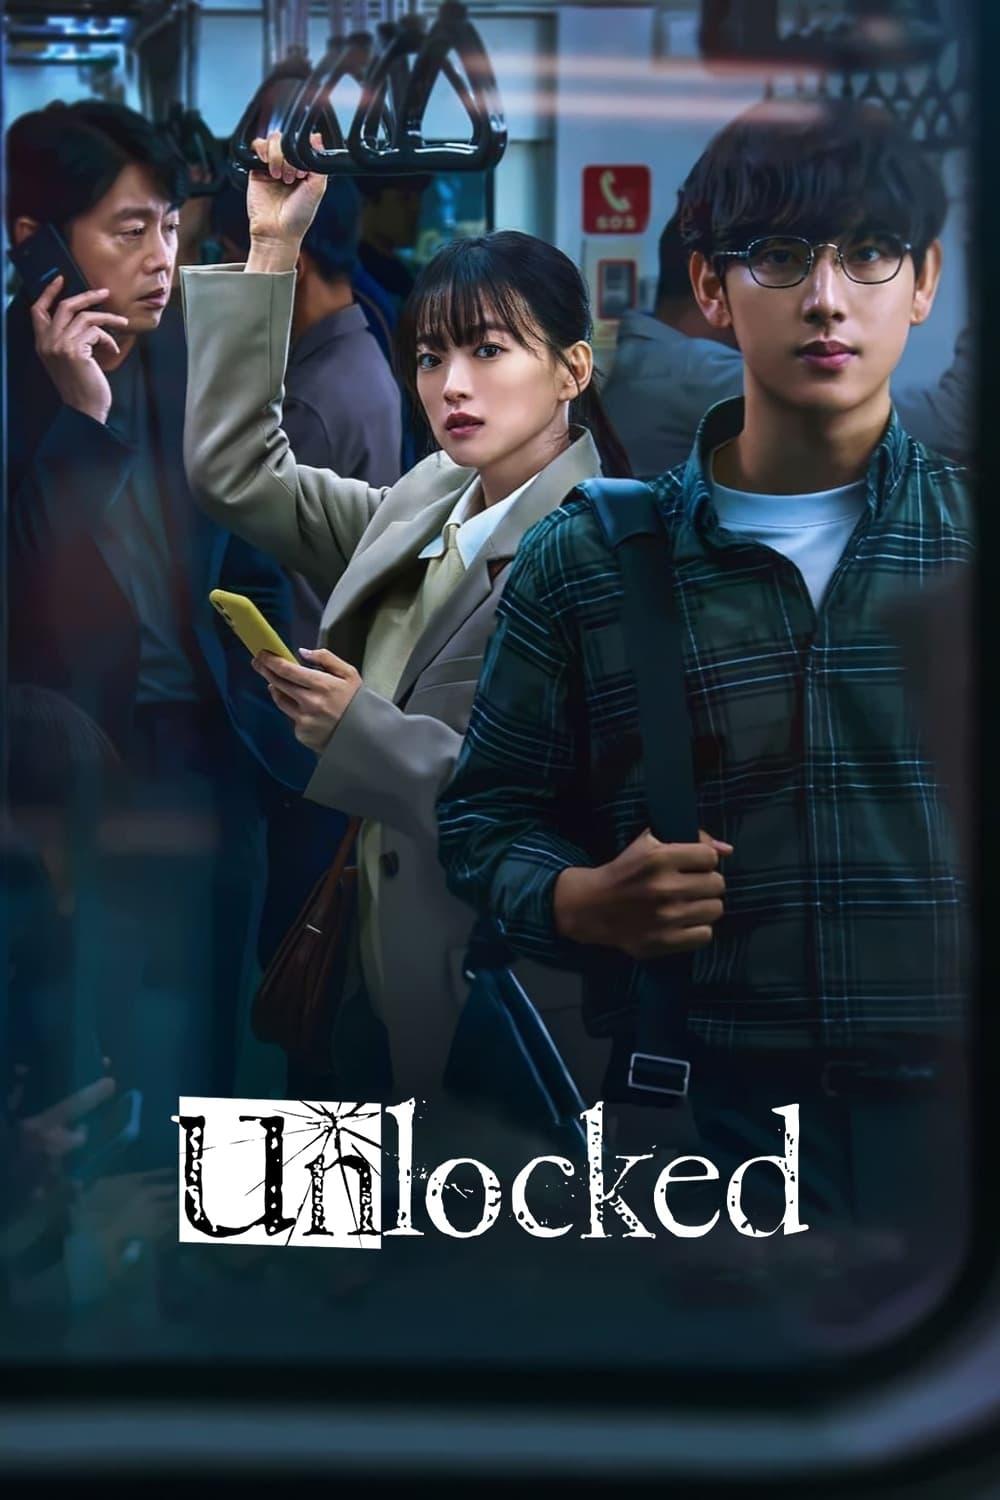 Unlocked poster